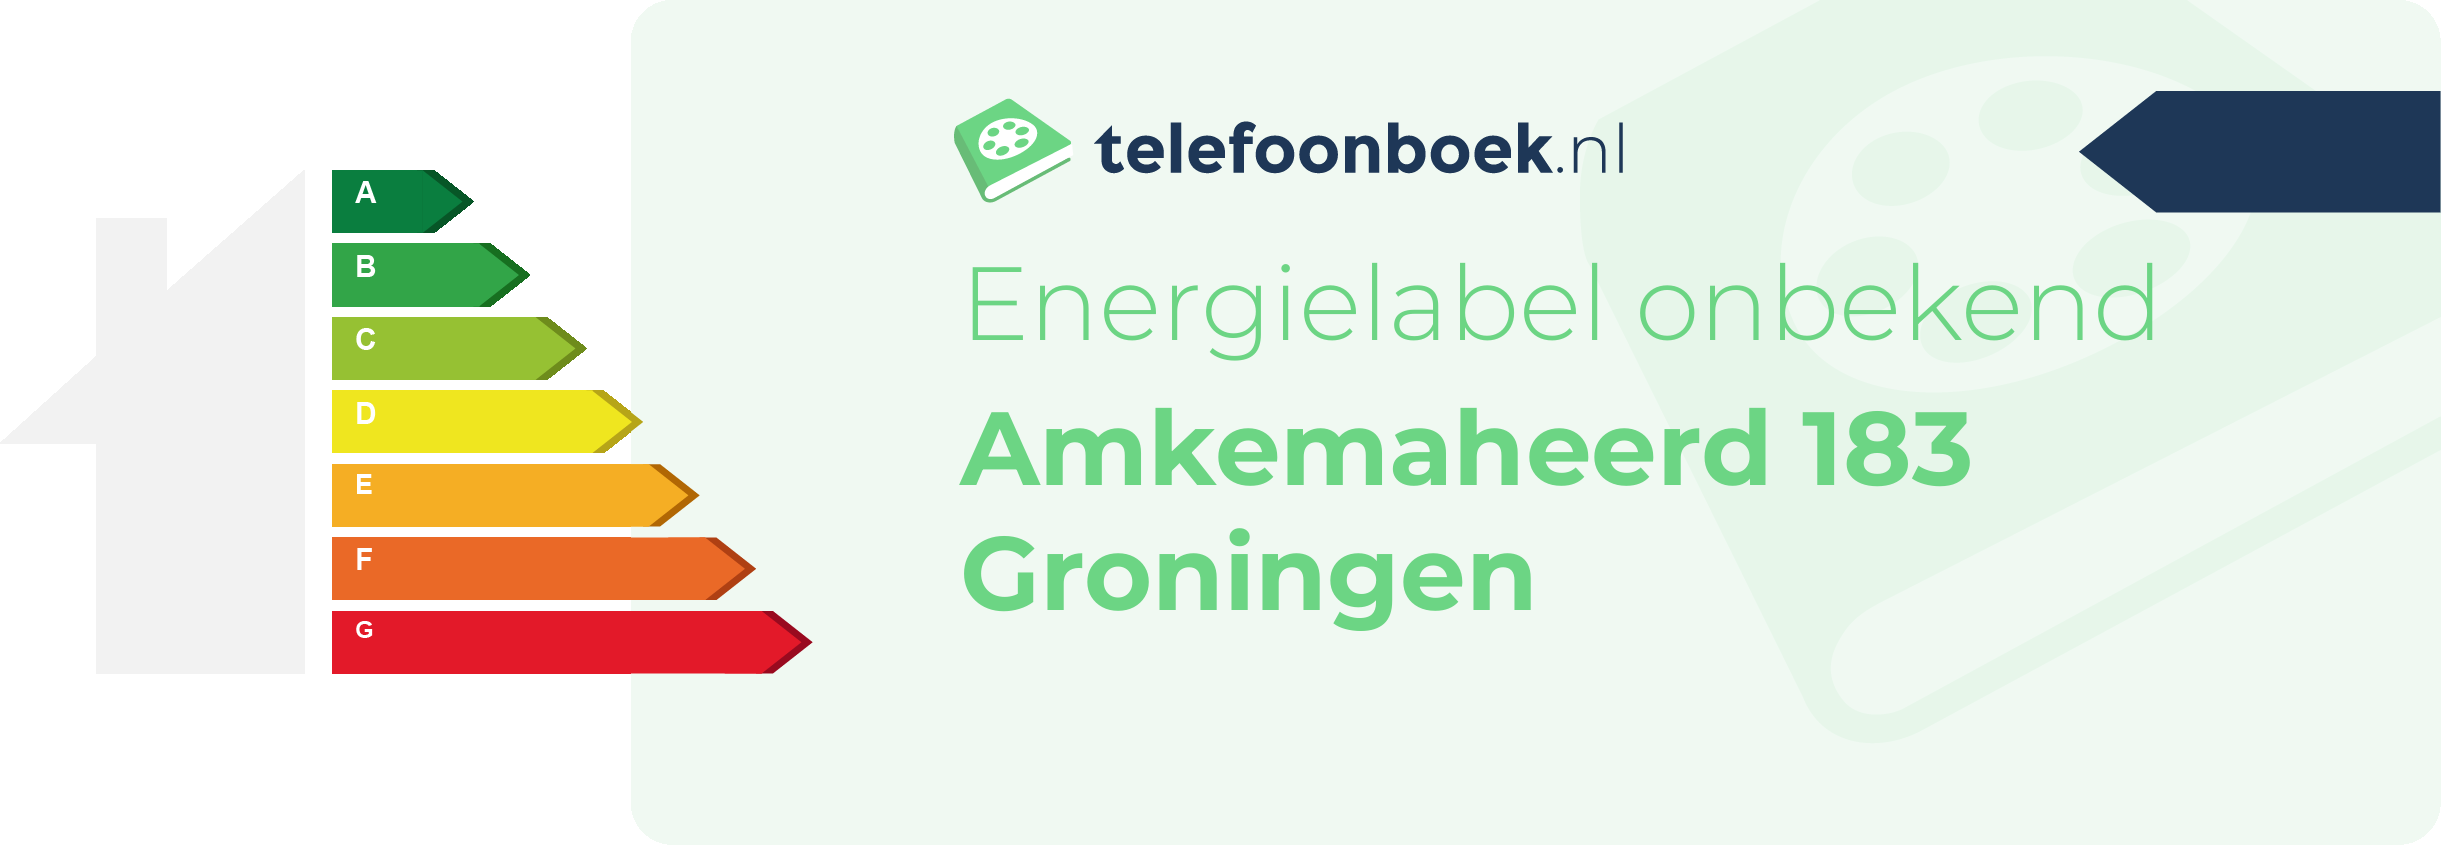 Energielabel Amkemaheerd 183 Groningen